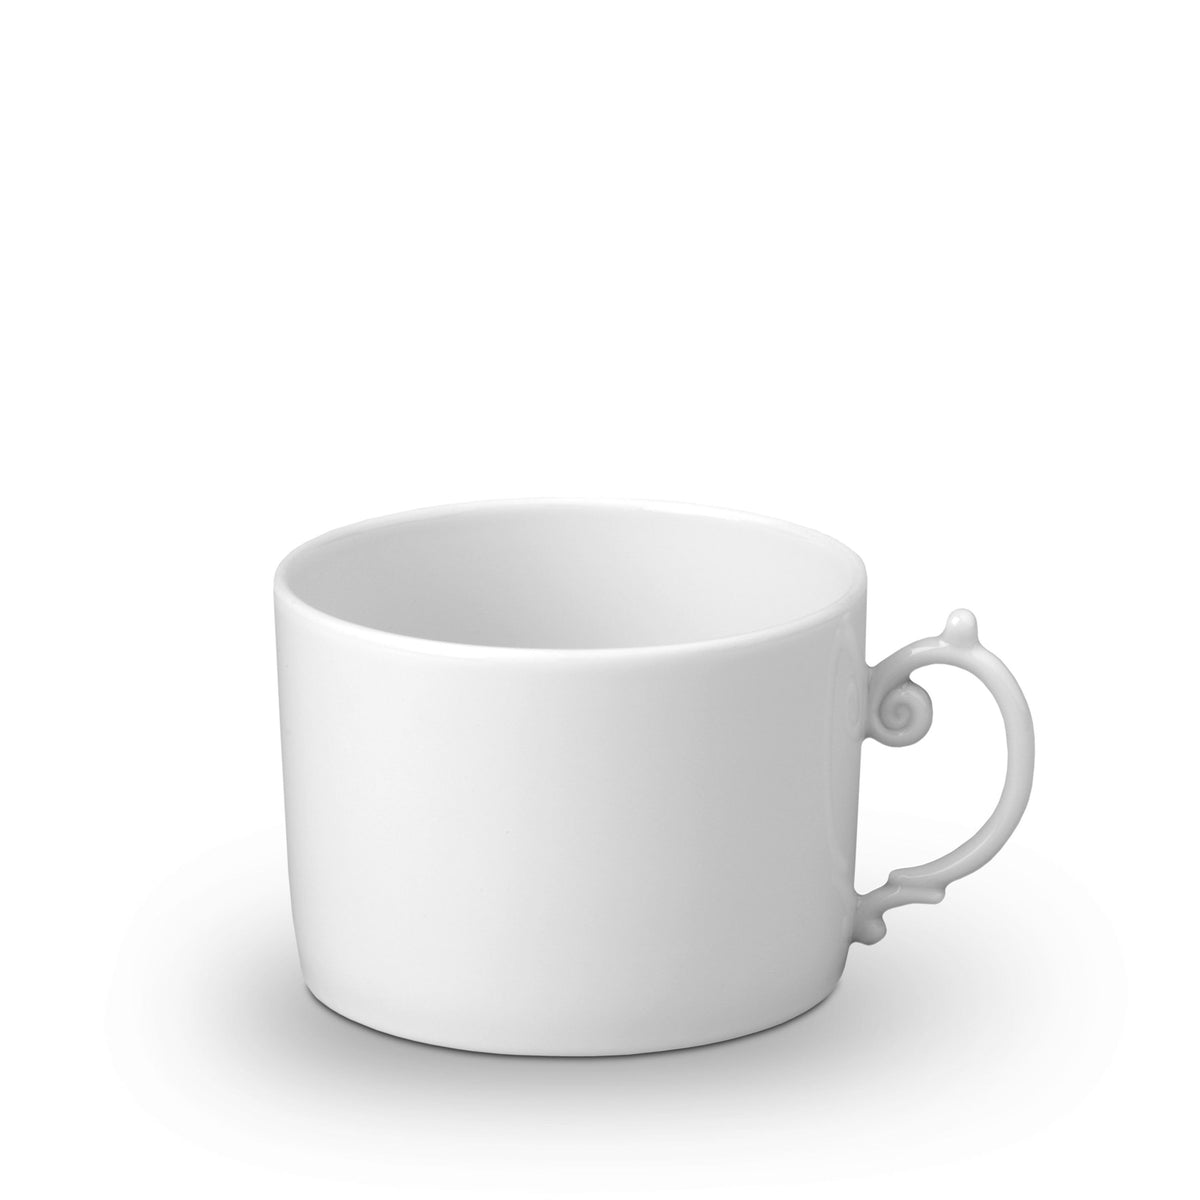 Aegean Tea Cup - White